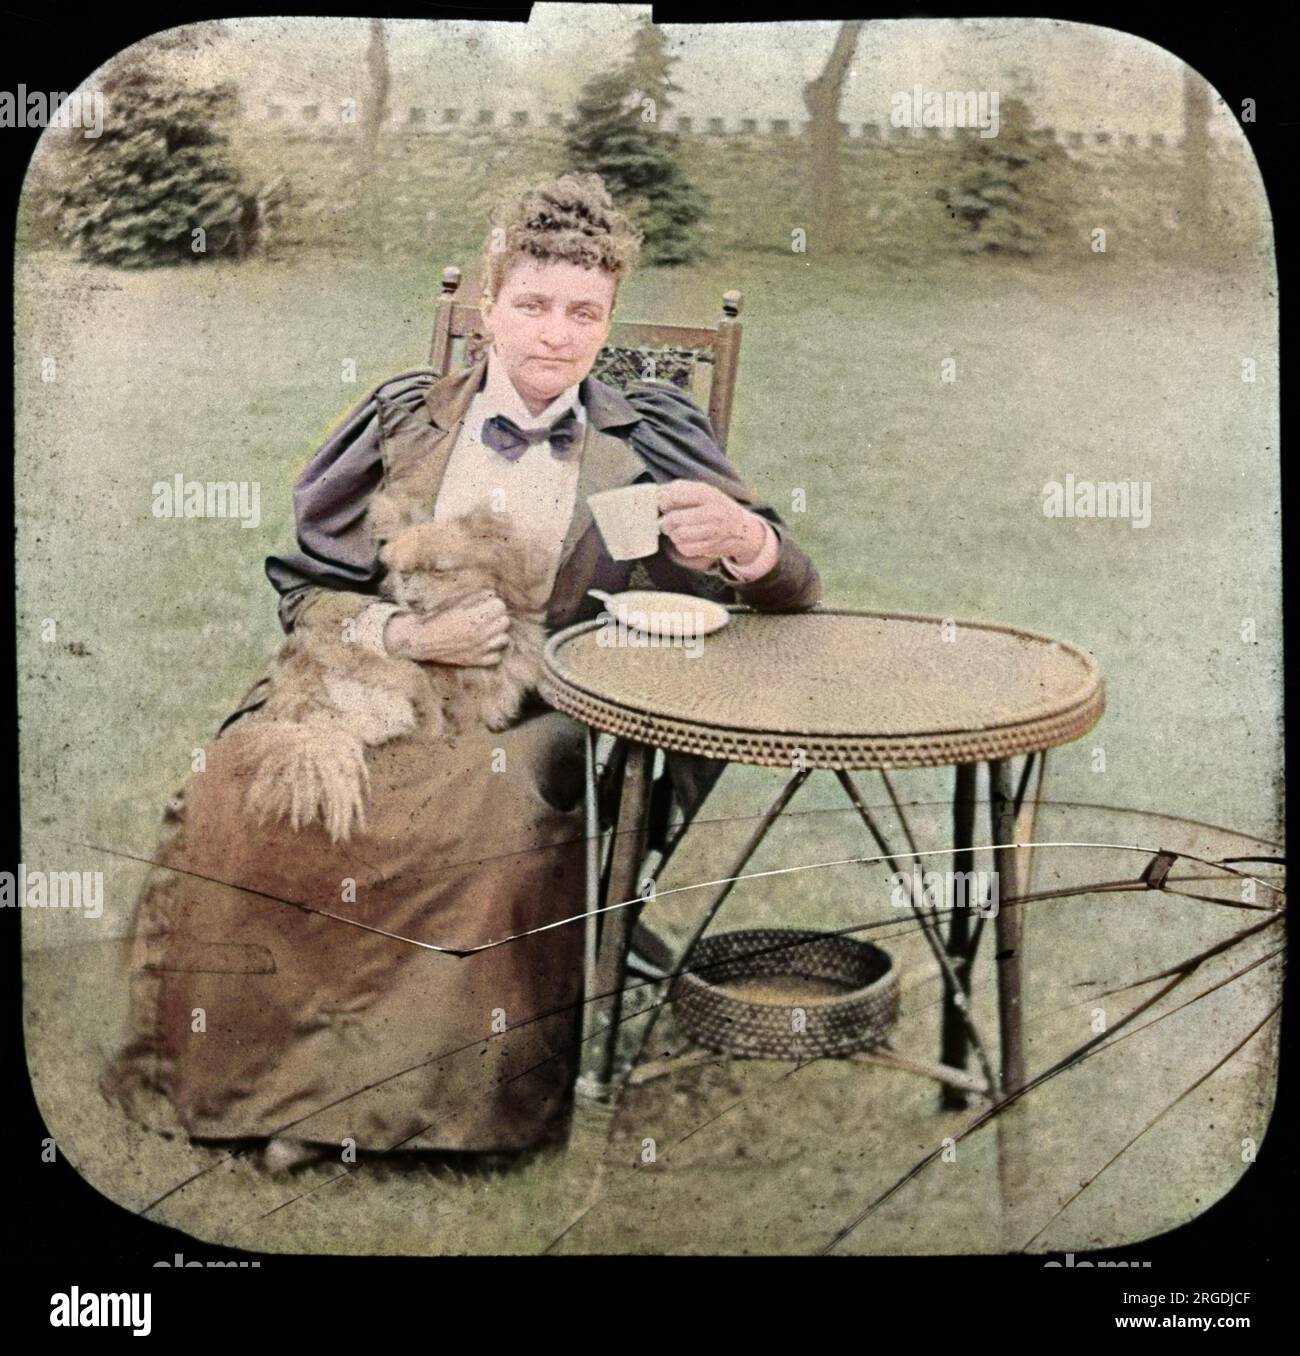 Florence Cook (c.1856-1904) était un médium anglais qui prétendait matérialiser un esprit nommé Katie King. Vu ici plus tard, assis dans un jardin avec un chien sur ses genoux. Banque D'Images